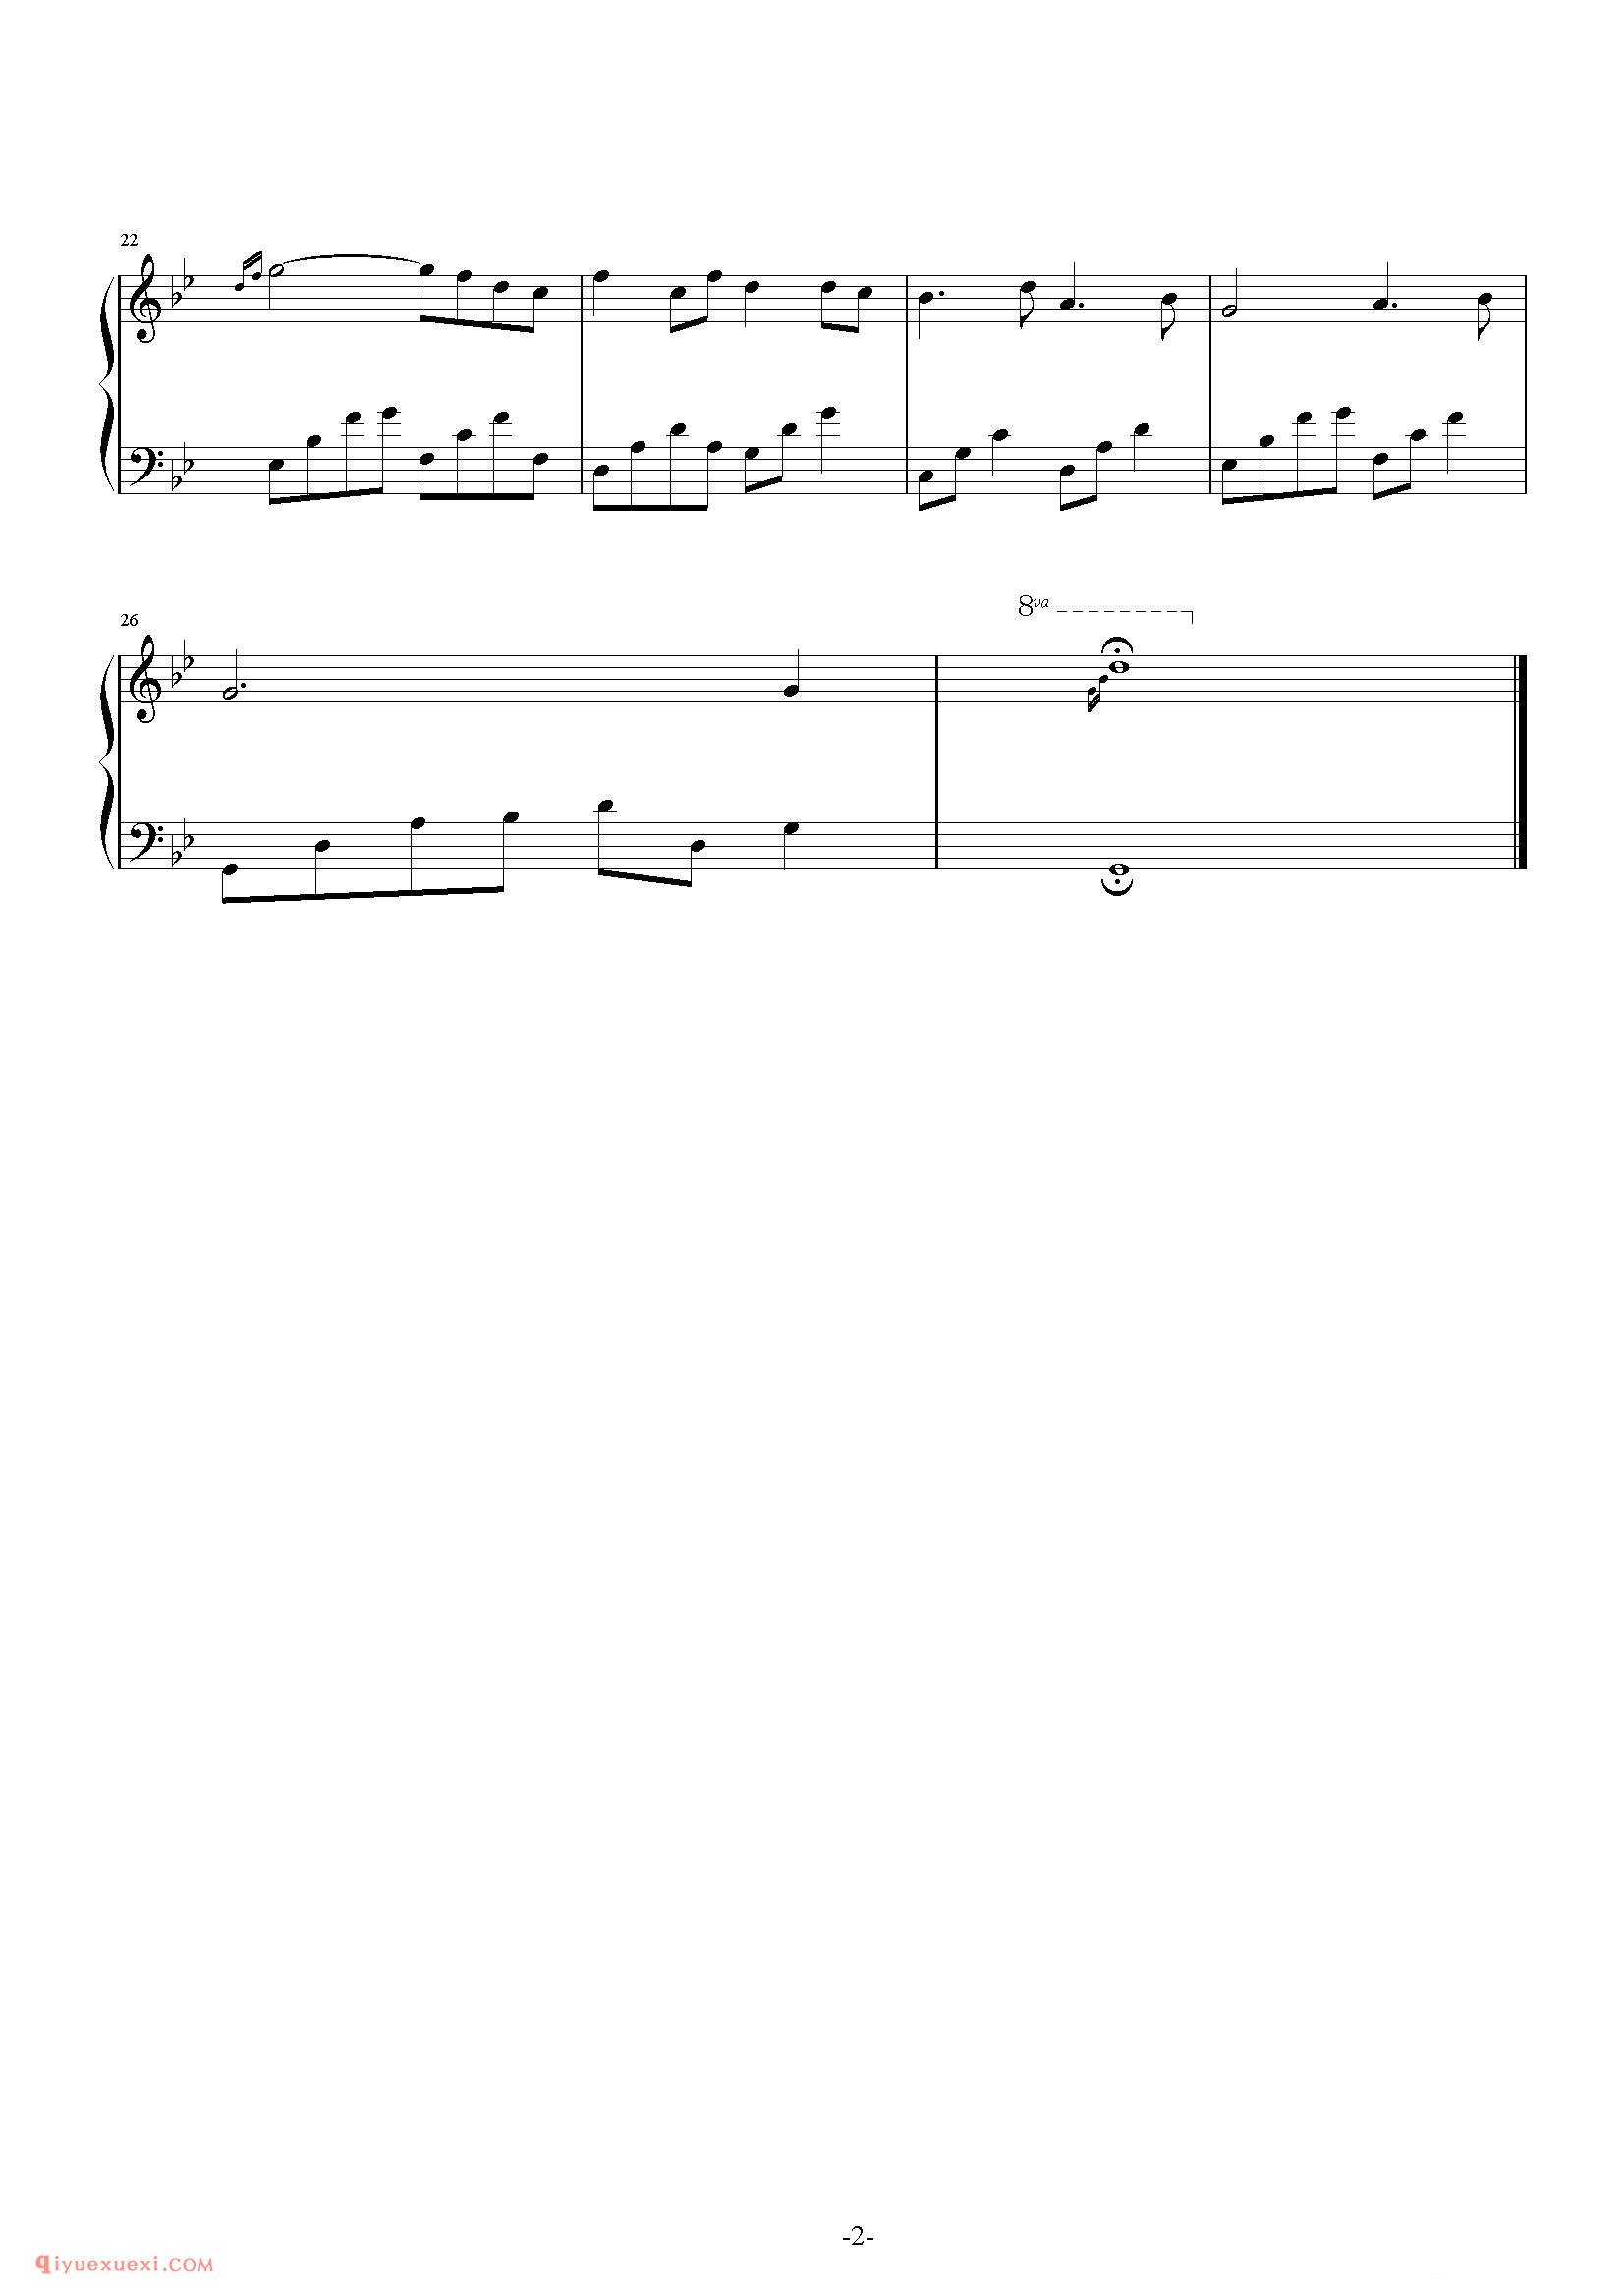 石进《夜的钢琴曲》第1首_石进夜的钢琴曲(1)五线谱